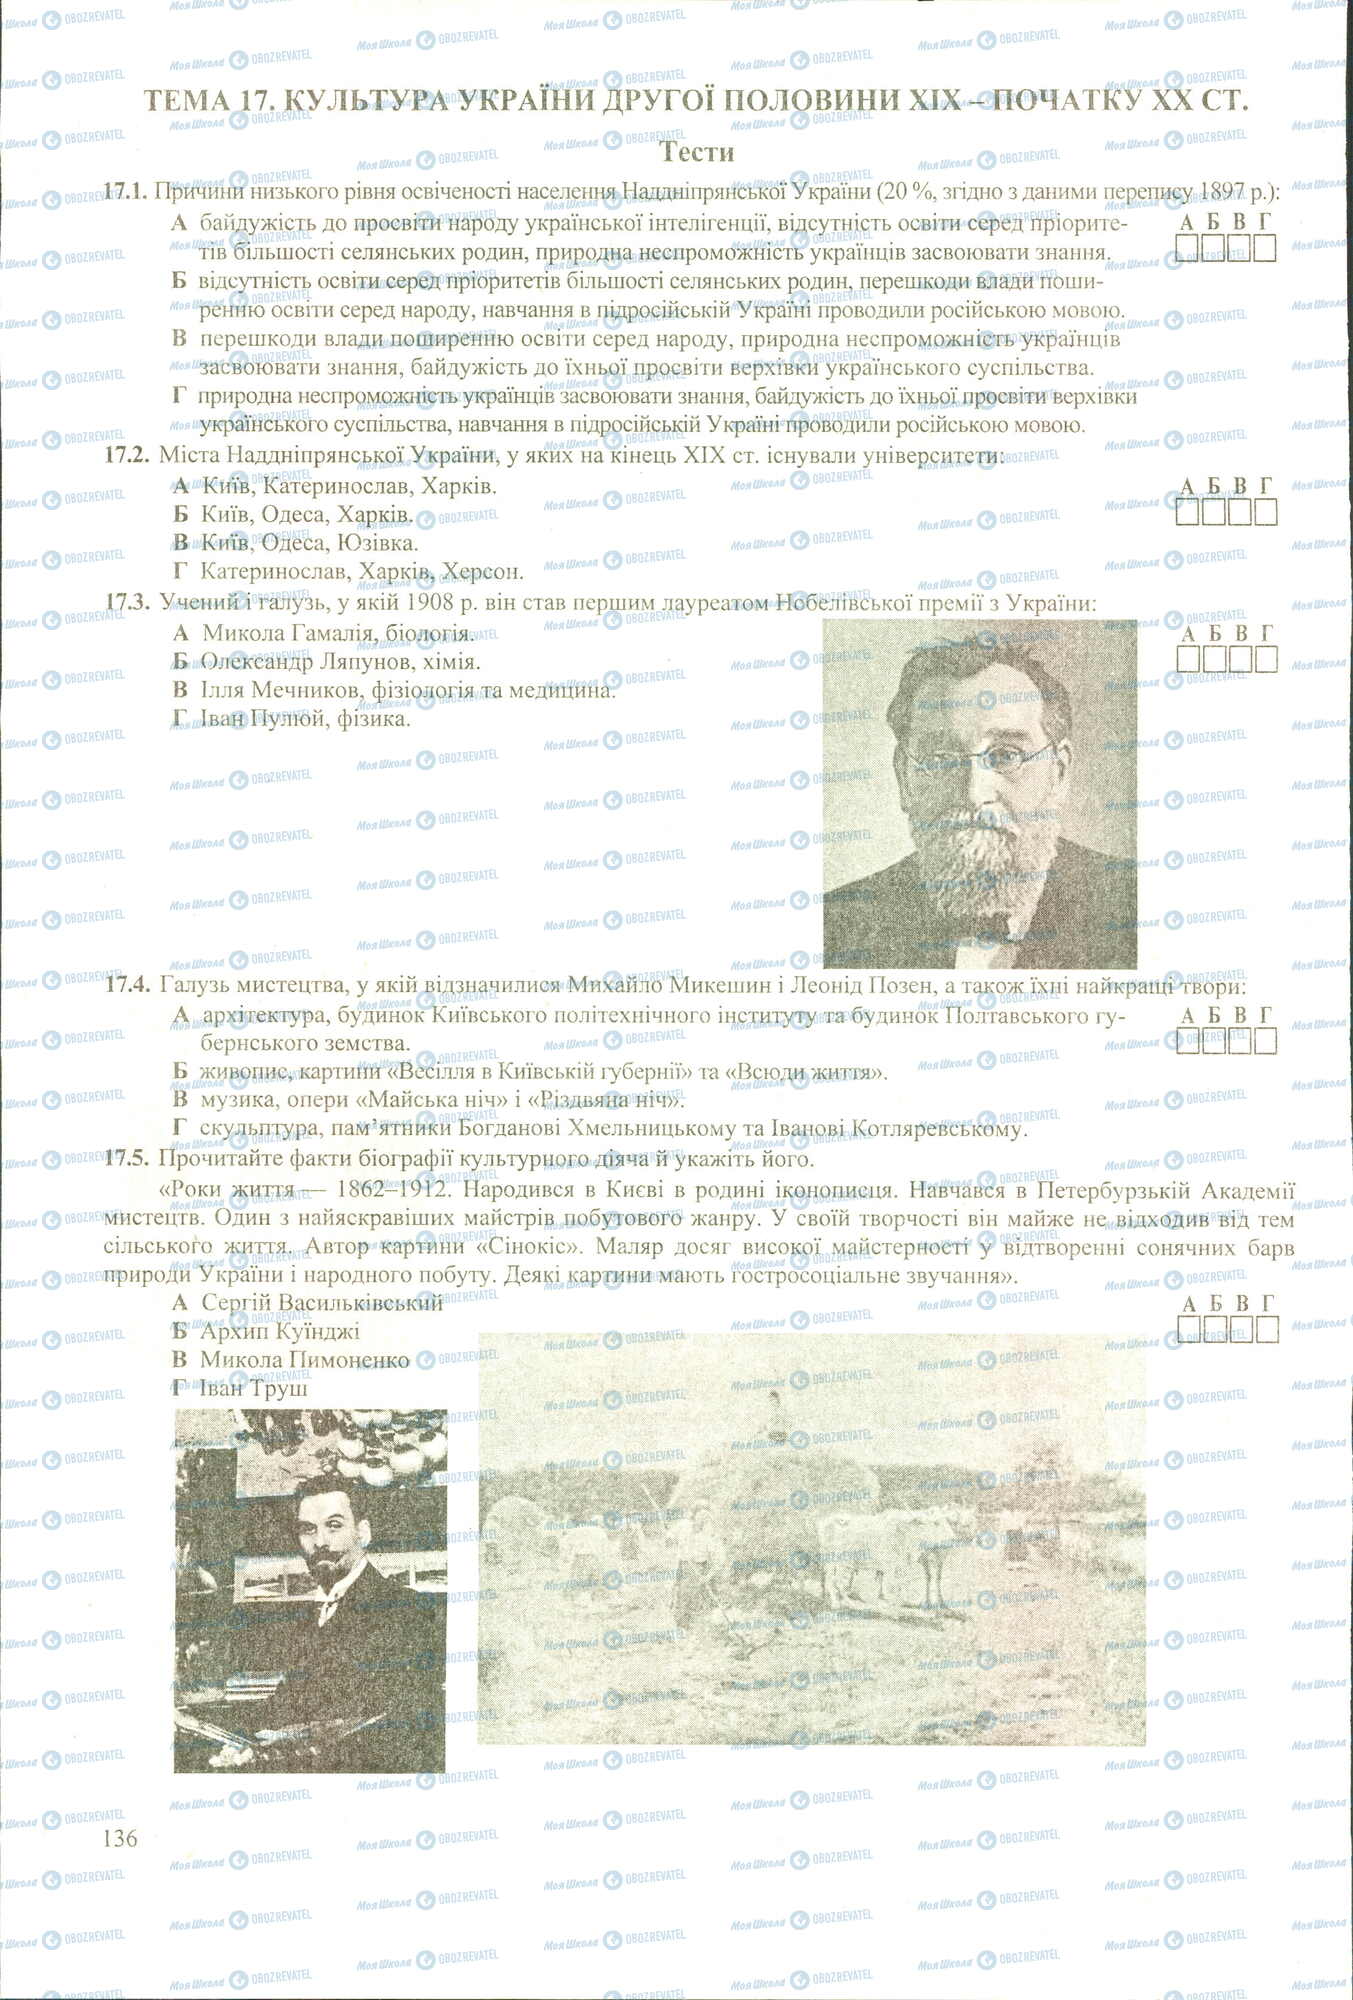 ЗНО История Украины 11 класс страница 1-5